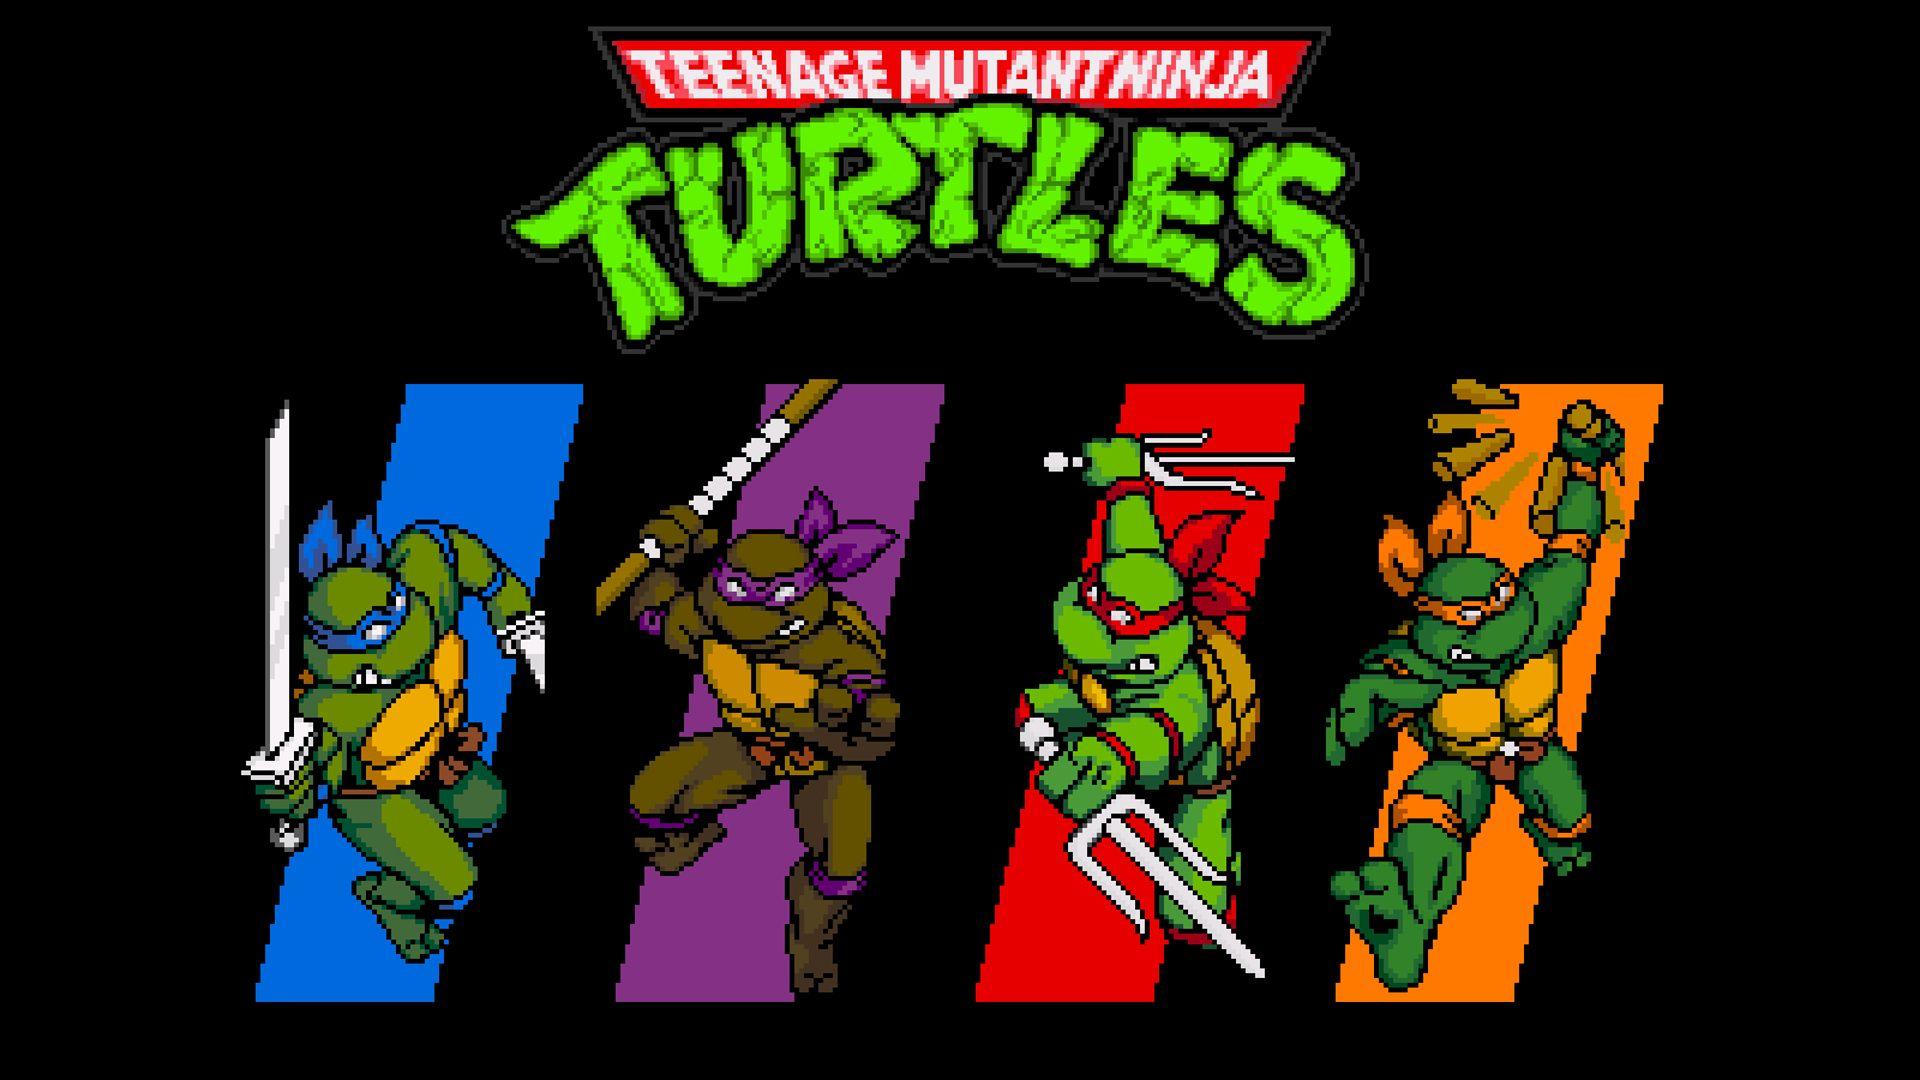 retro ninja turtles wallpaper